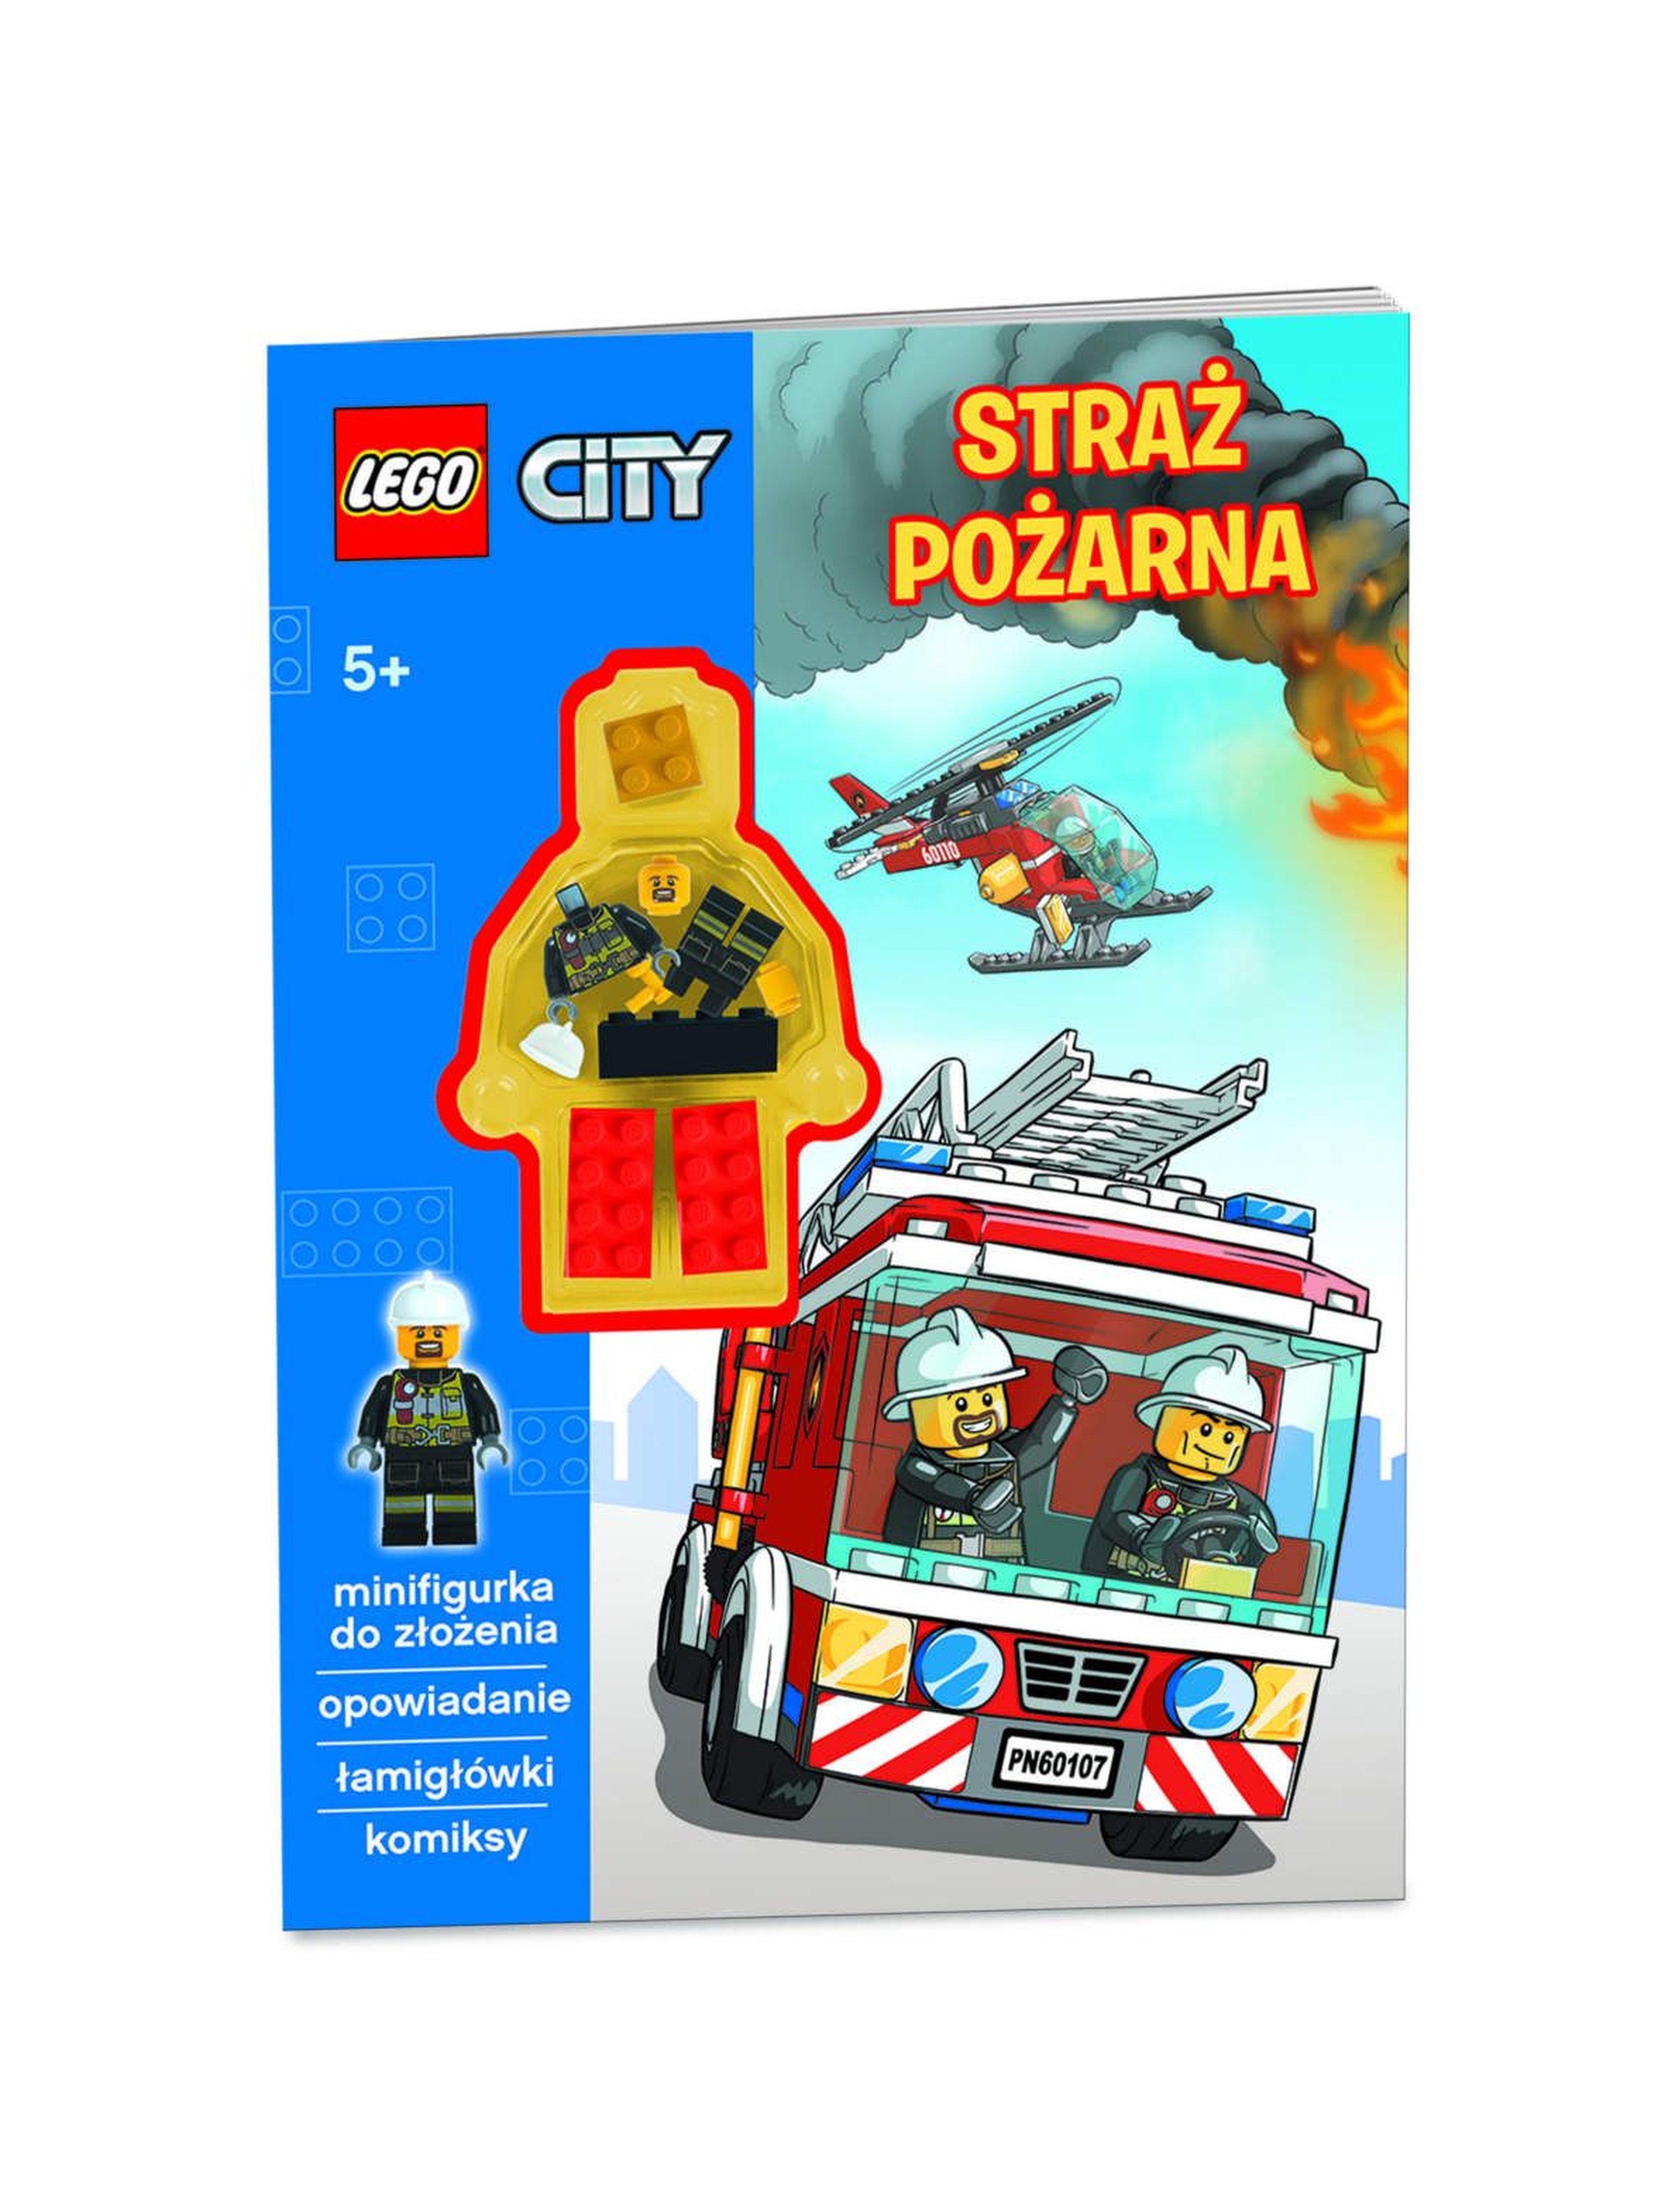 Książka Lego City z minifigurką